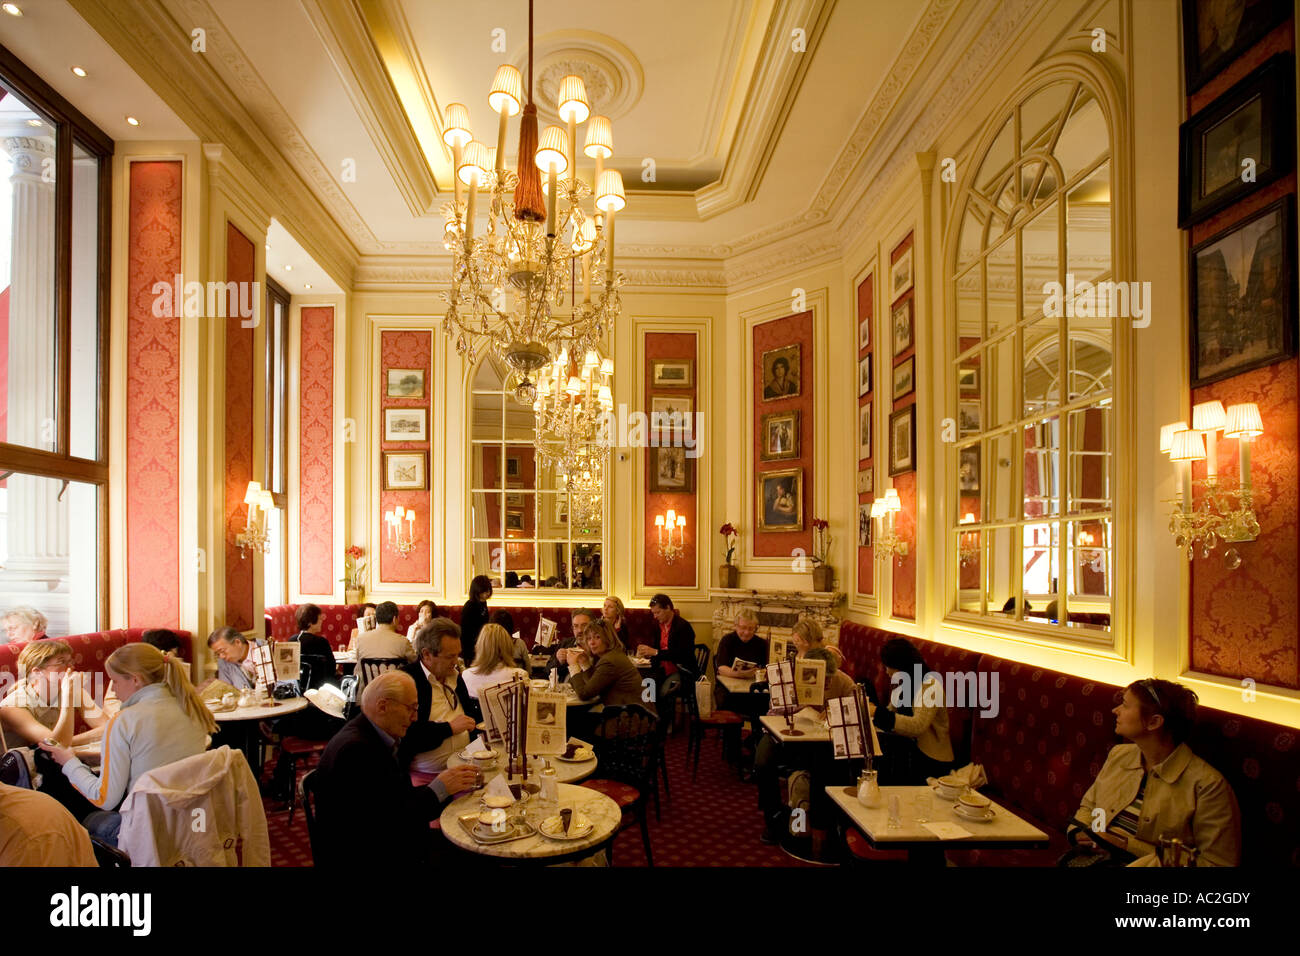 Cafe Sacher Wien, Hotel Sacher, Vienna, Austria - Candid Cuisine